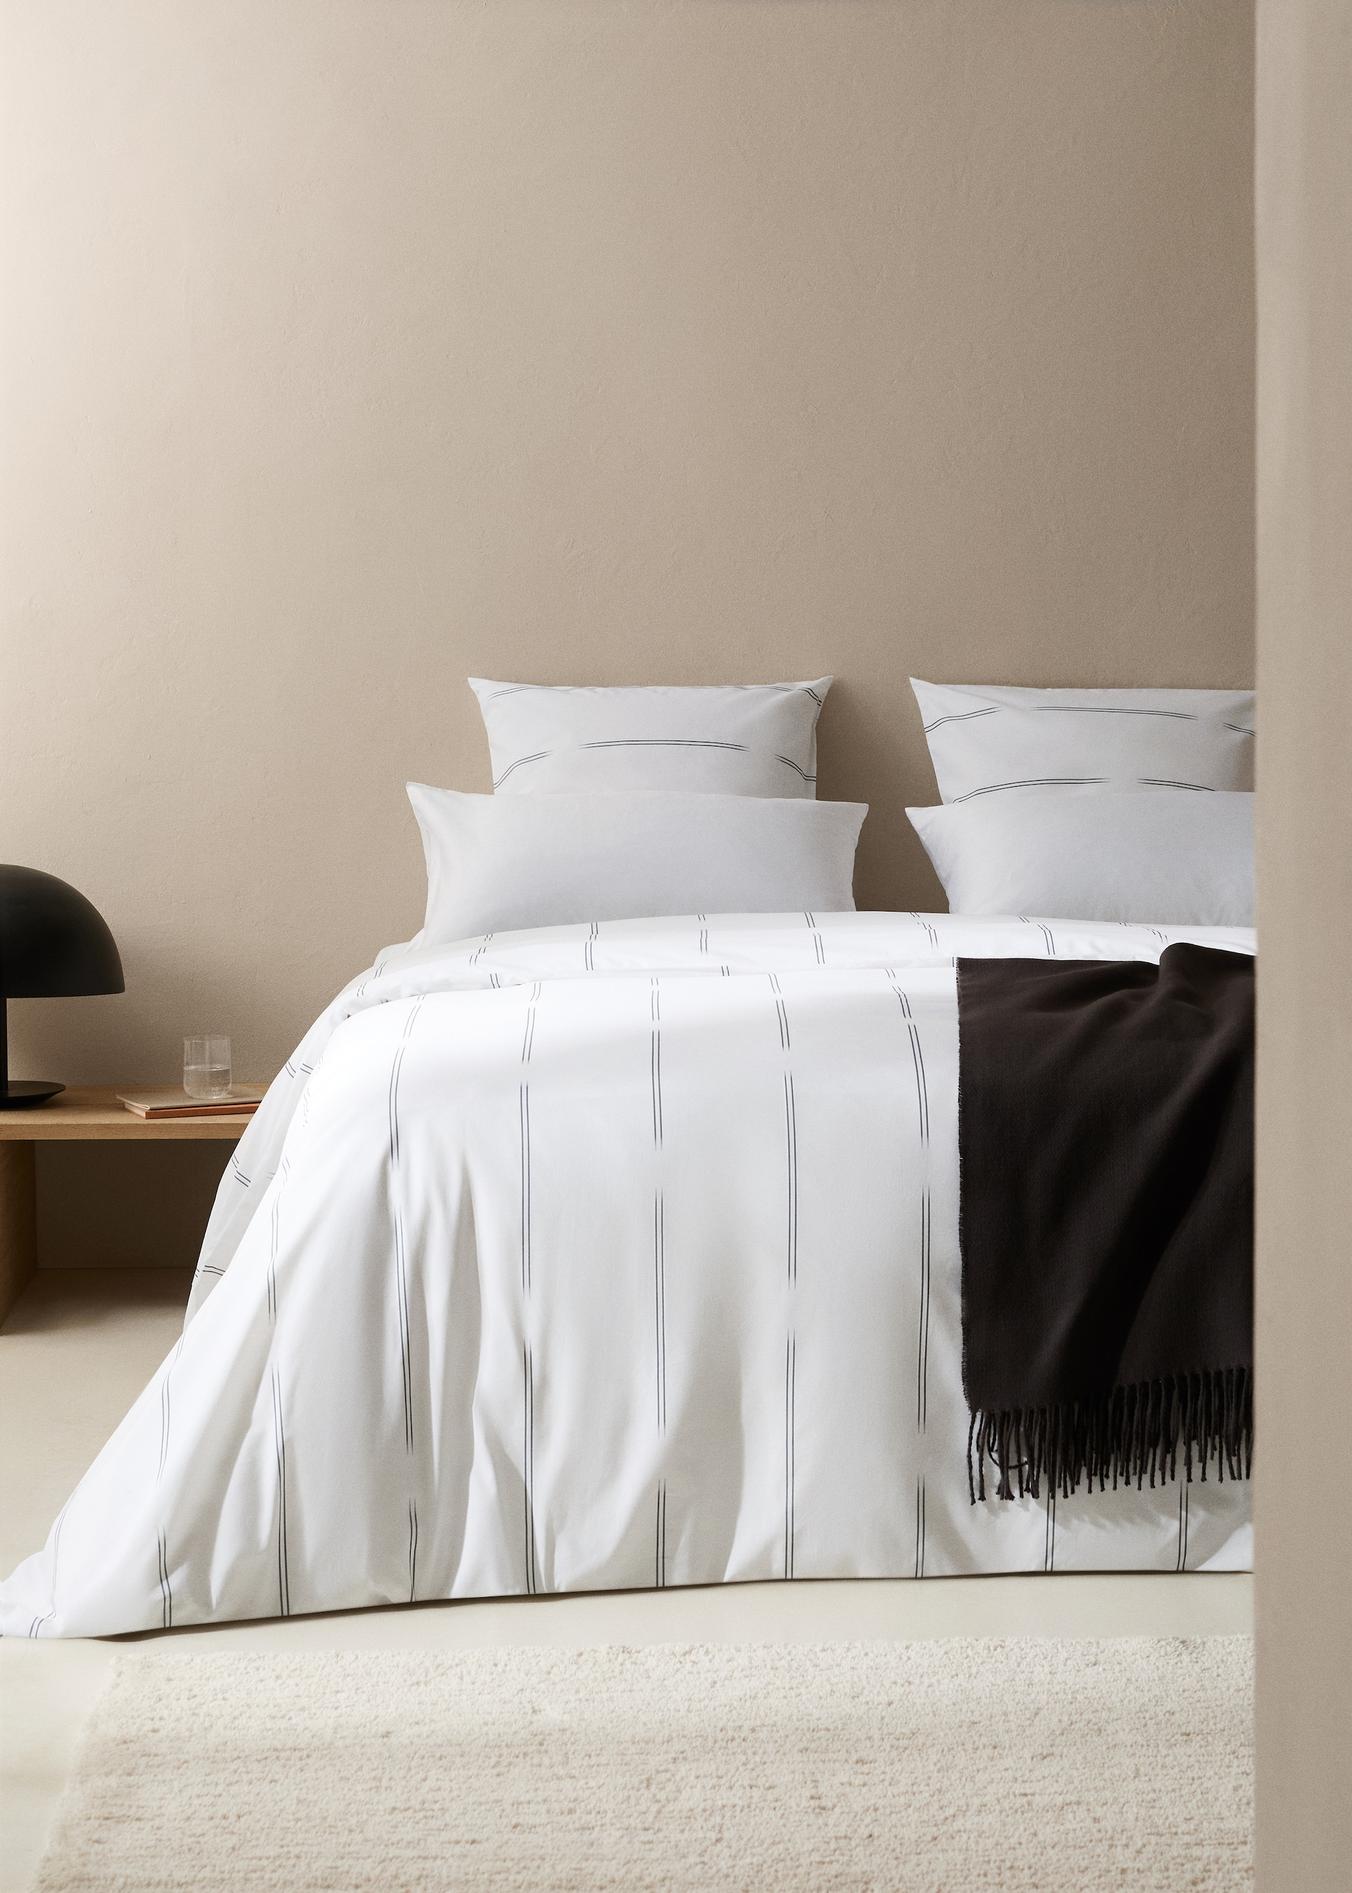 Bettbezug aus Baumwolle mit Blumenmuster für 150 cm Bett für 35,99€ in Mango